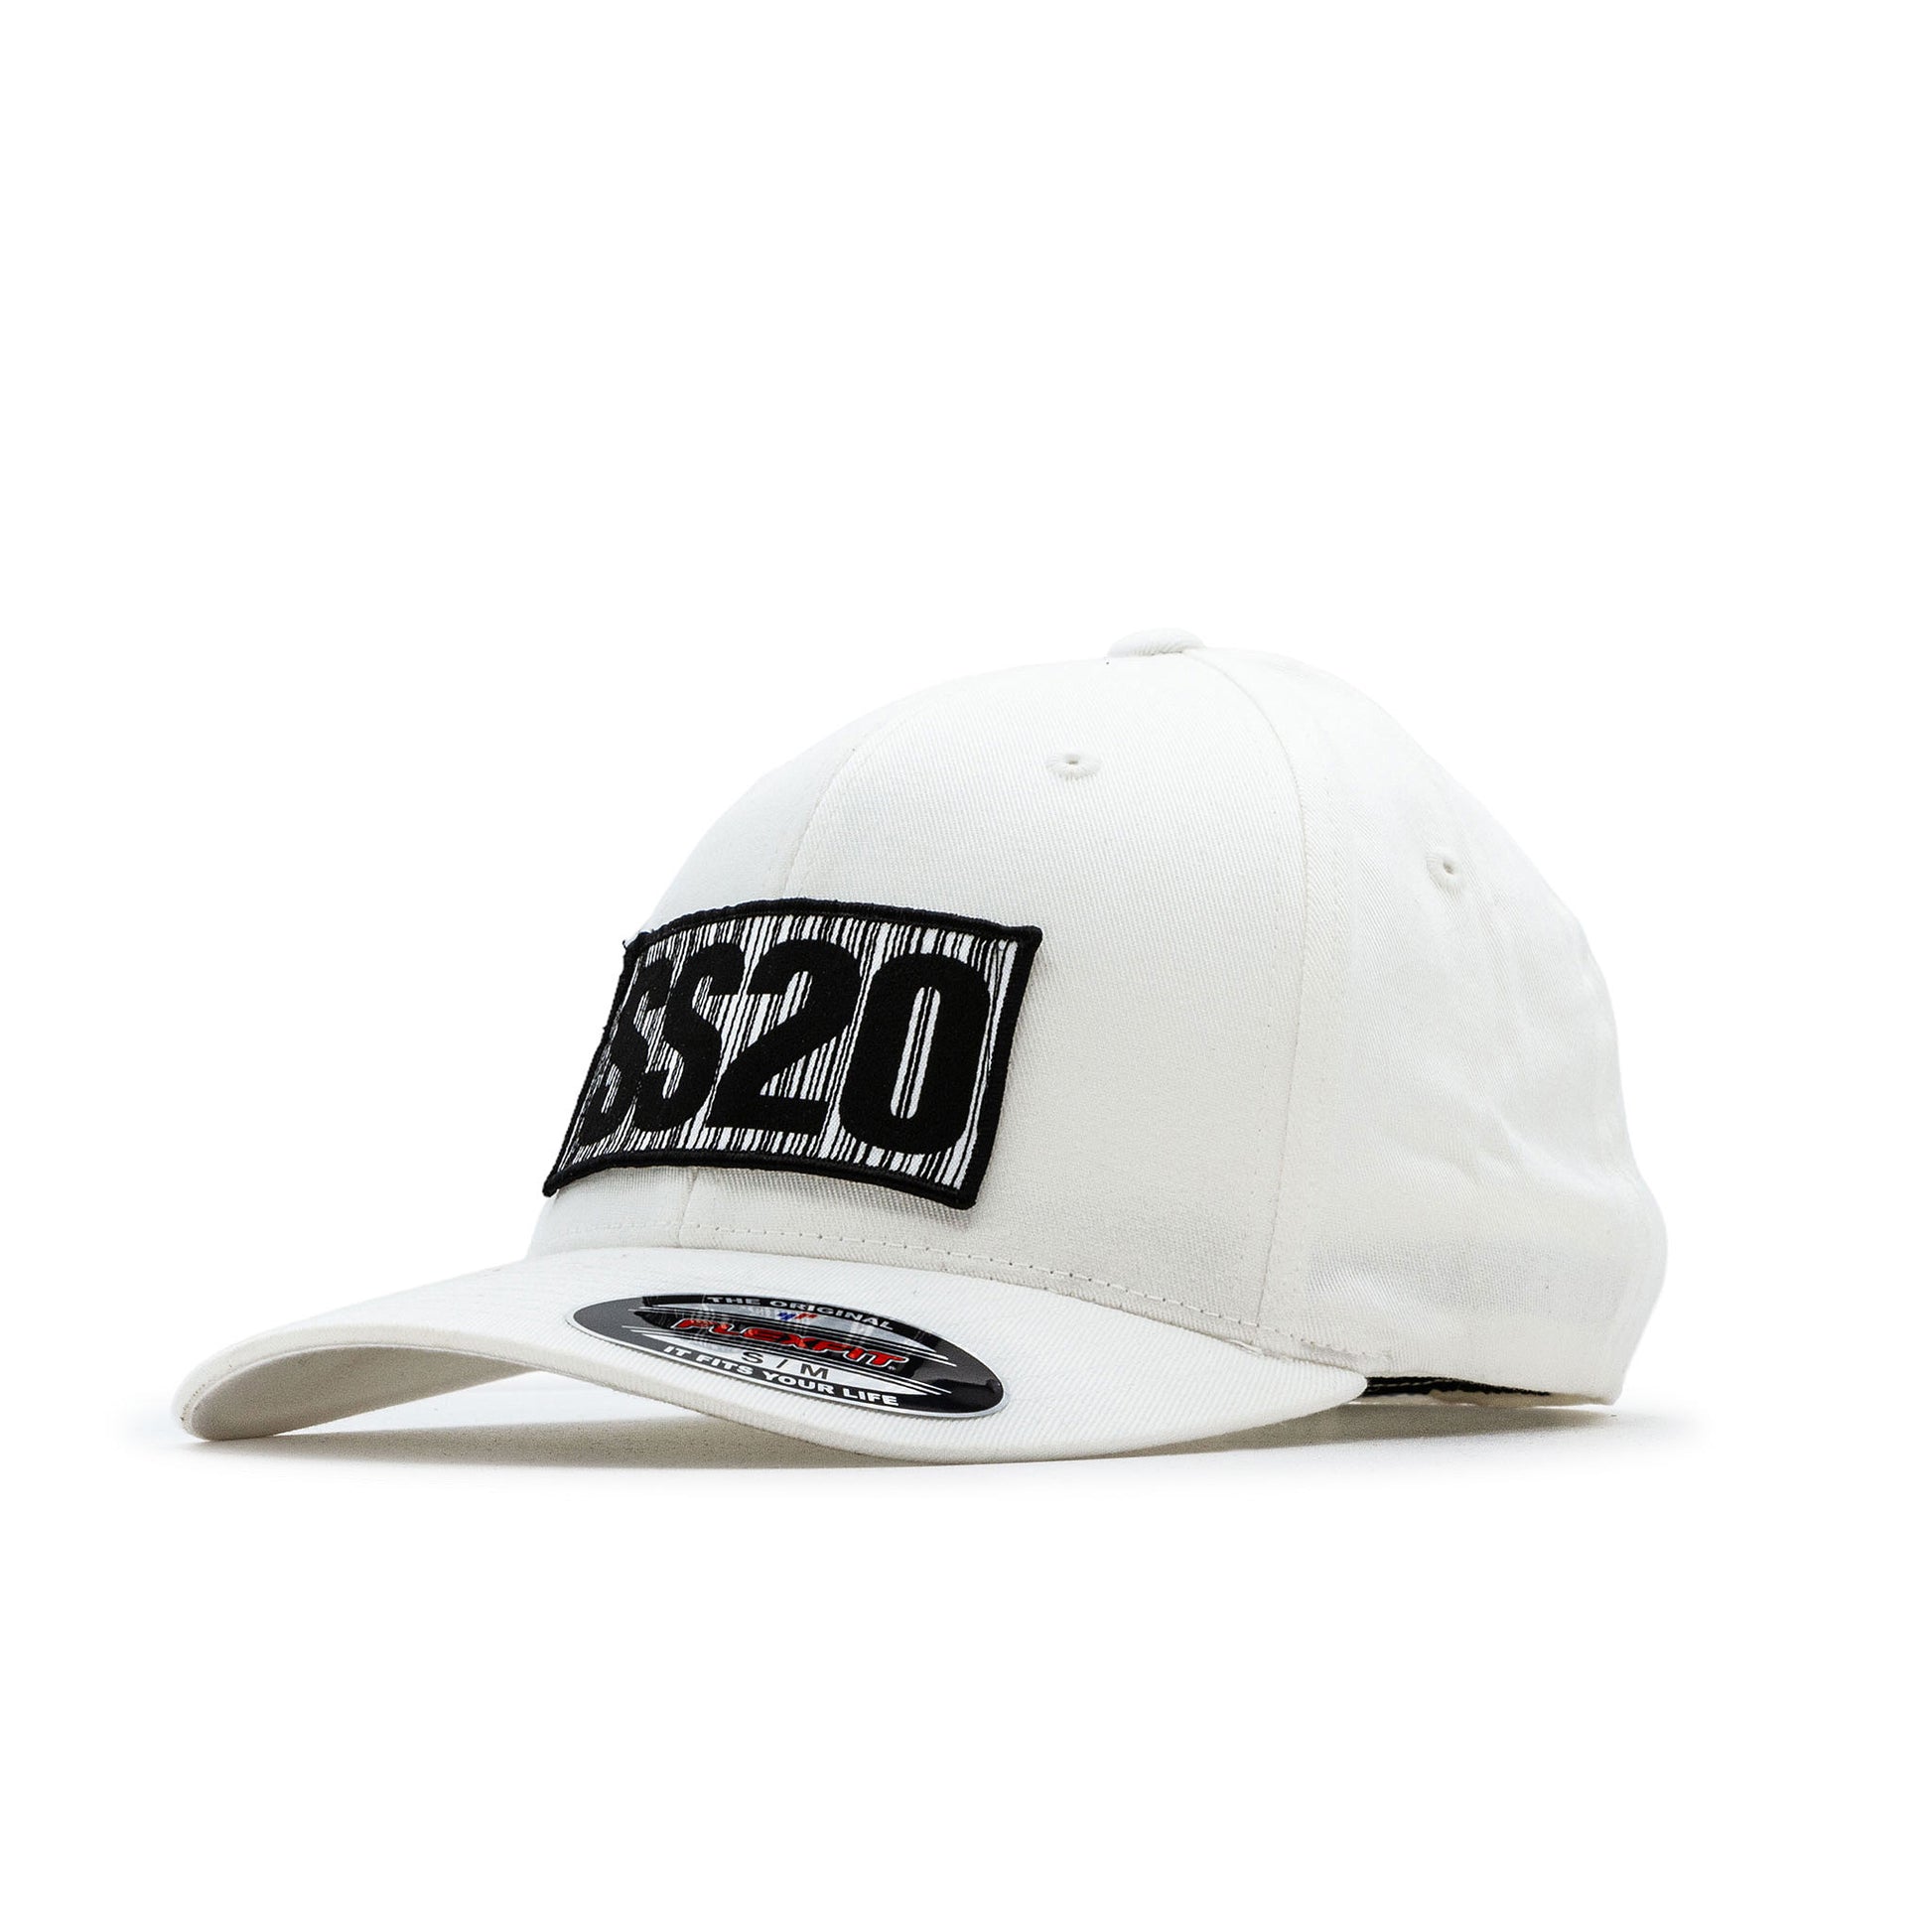 SS20 - Barcode Organic Flexfit Cap White – weareSS20